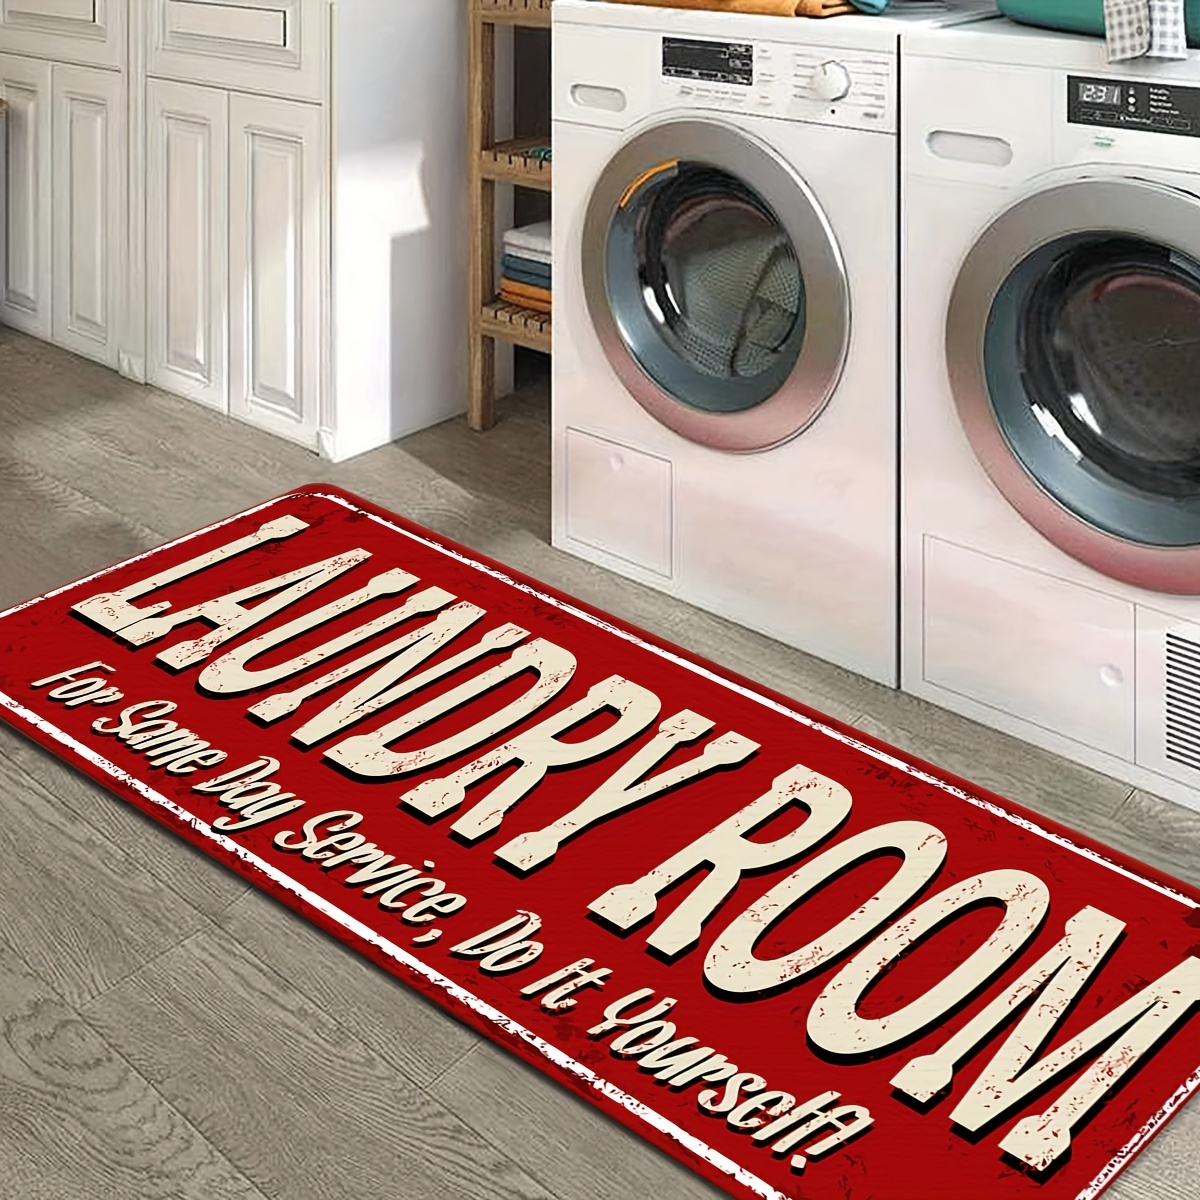 Washer / Dryer Rubber Floor Mats